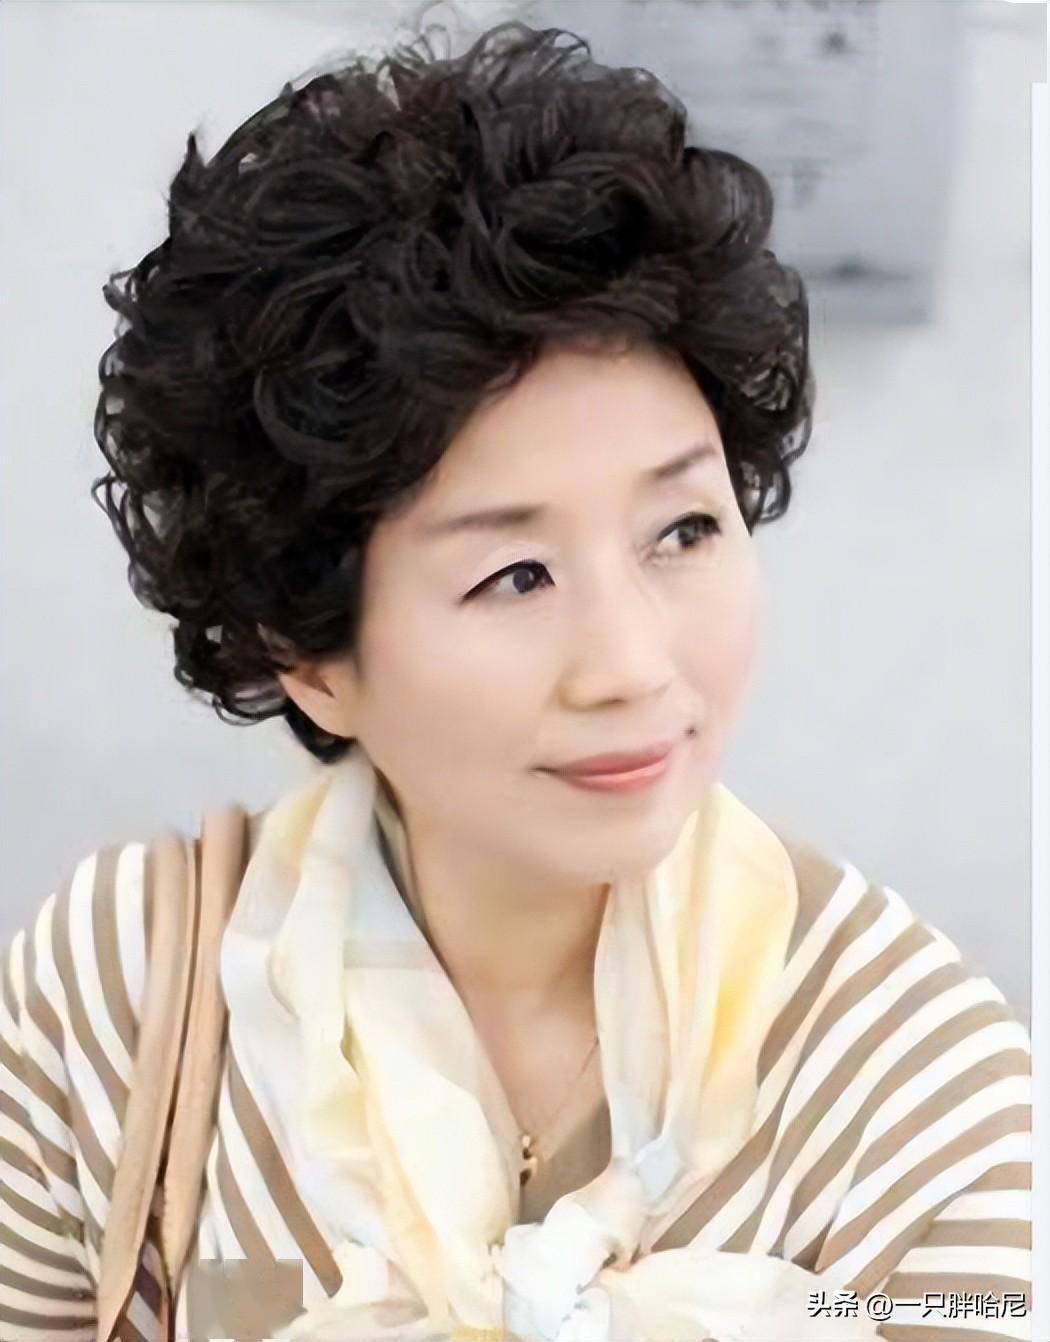 超短羊毛卷【1】常见的标准老年头发型▍赵雅芝的时髦思路之一,不烫